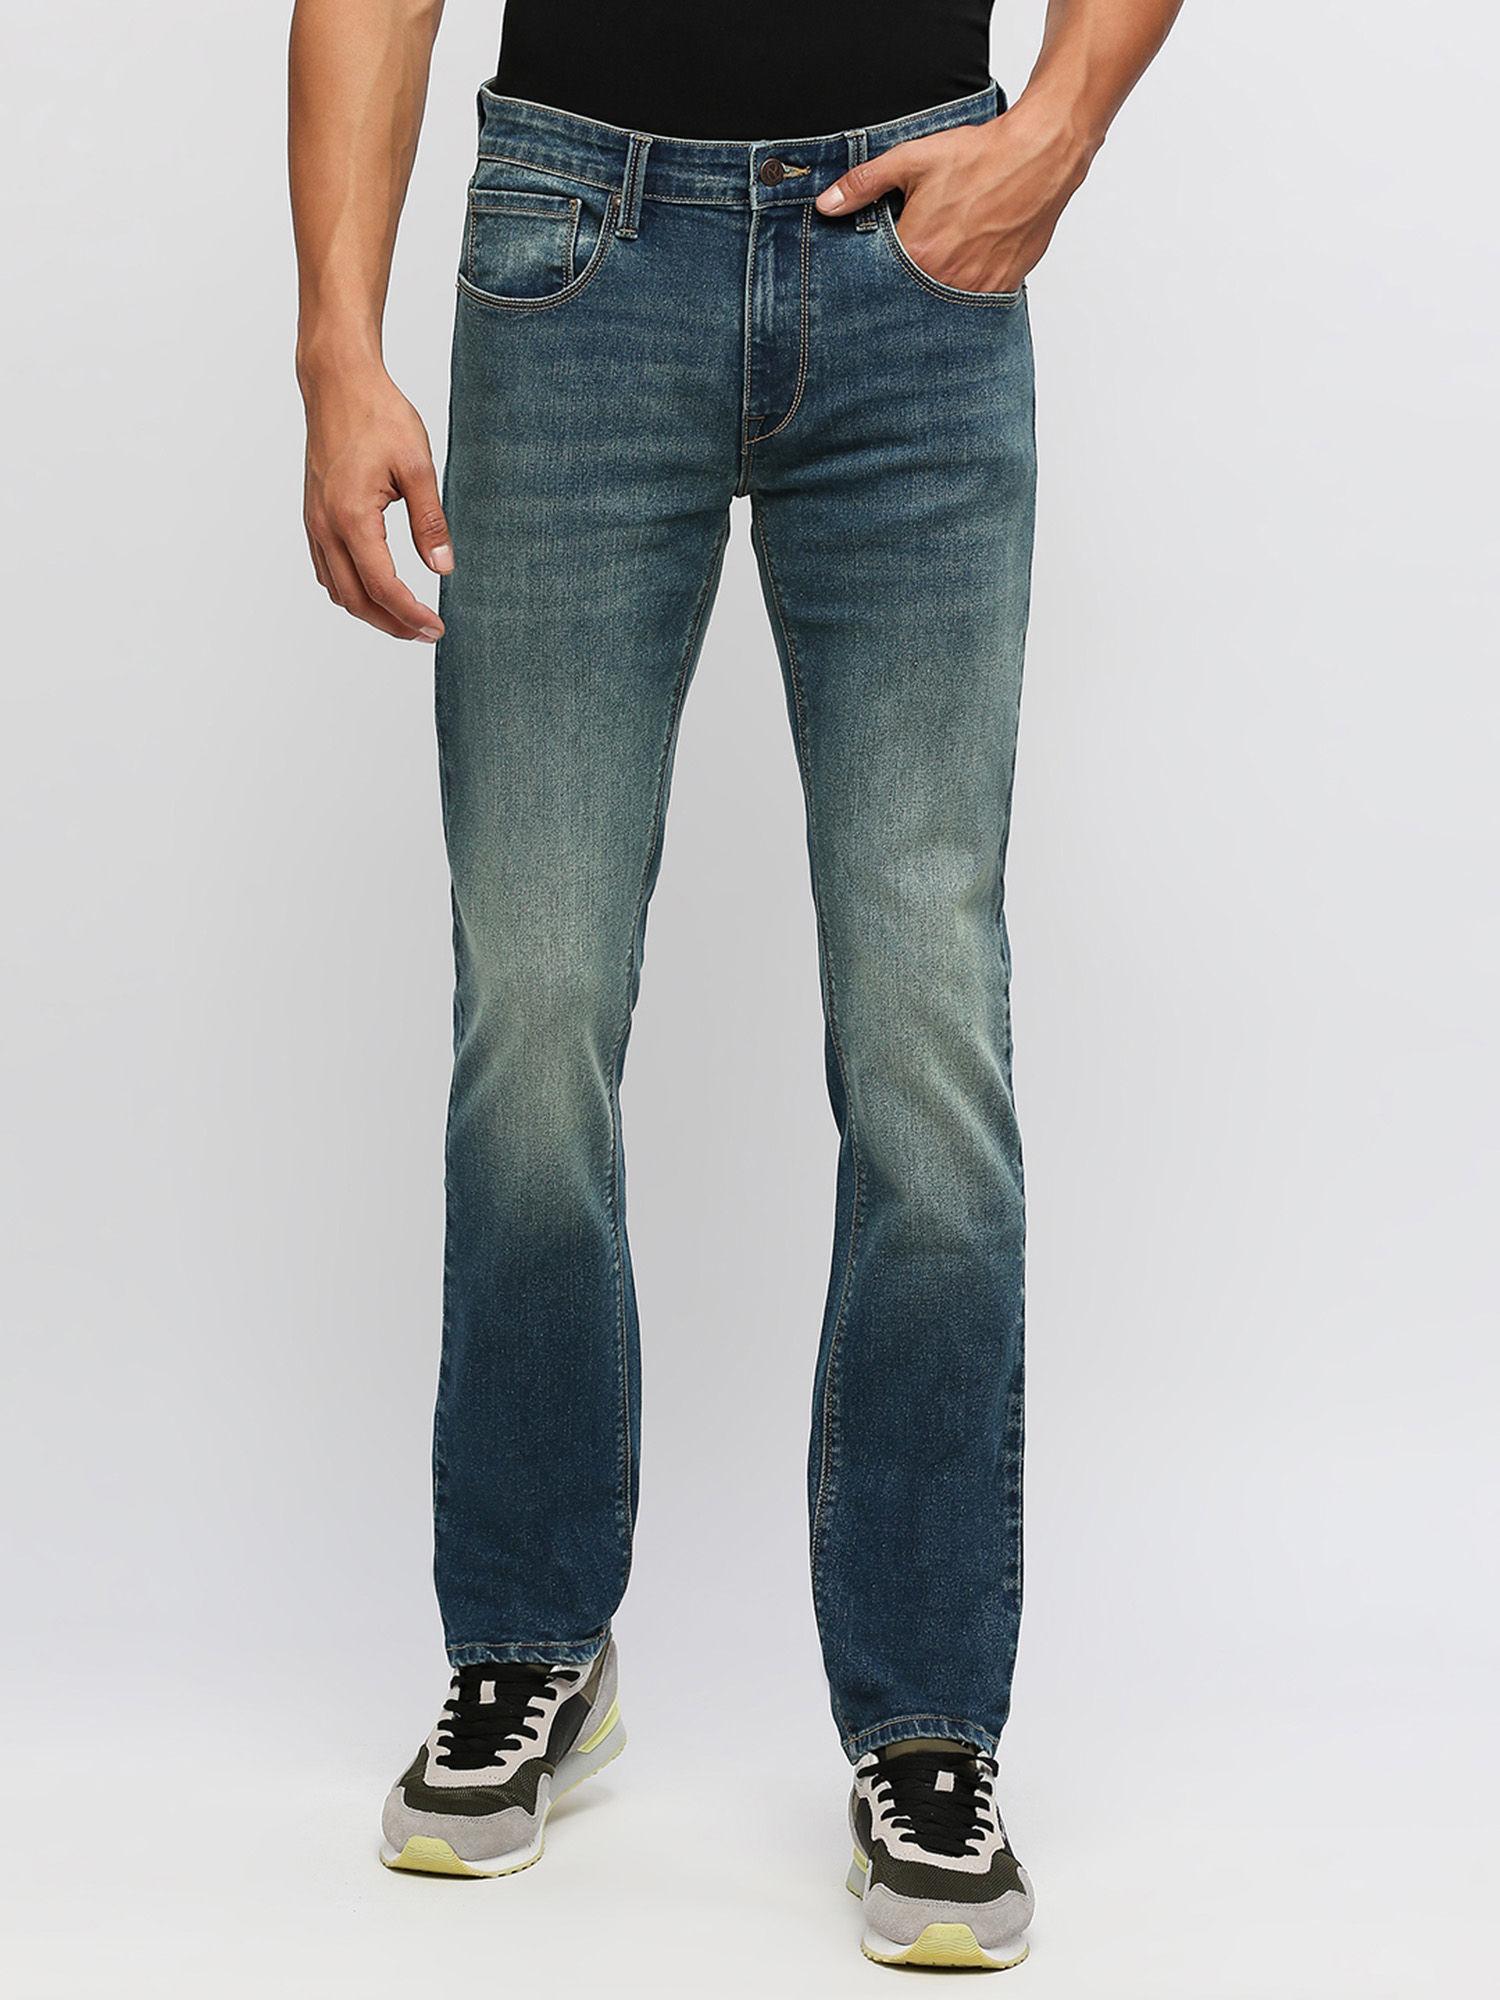 vapour-slim-fit-mid-waist-jeans-navy-blue